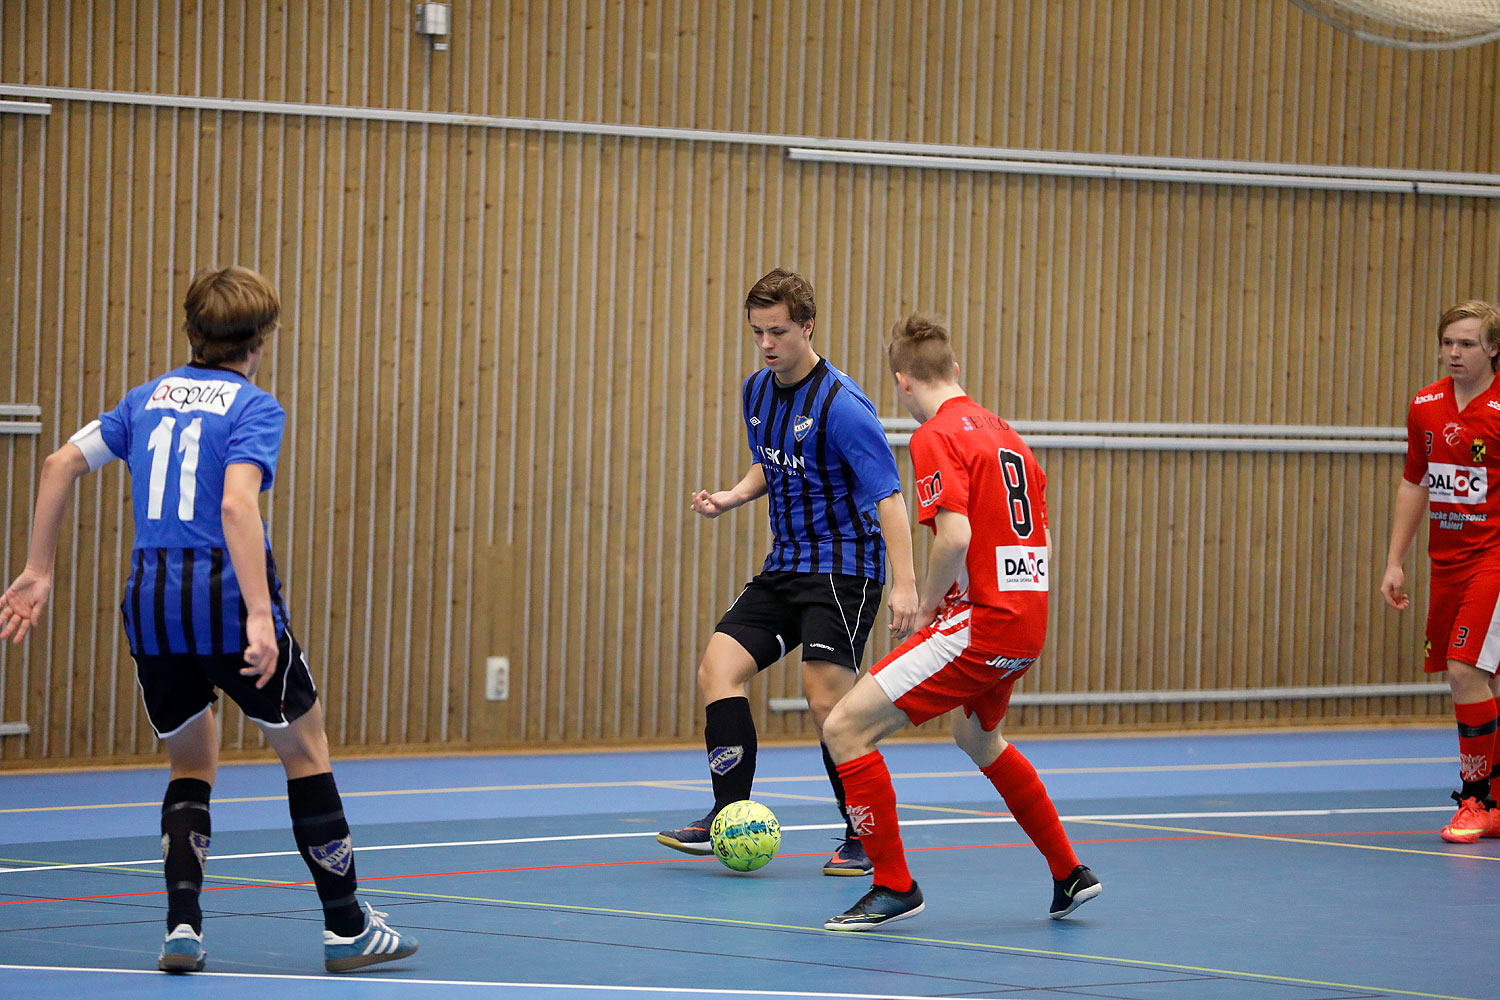 Skövde Futsalcup Herrjuniorer Ulricehamns IFK-Töreboda IK,herr,Arena Skövde,Skövde,Sverige,Skövde Futsalcup 2016,Futsal,2016,141931